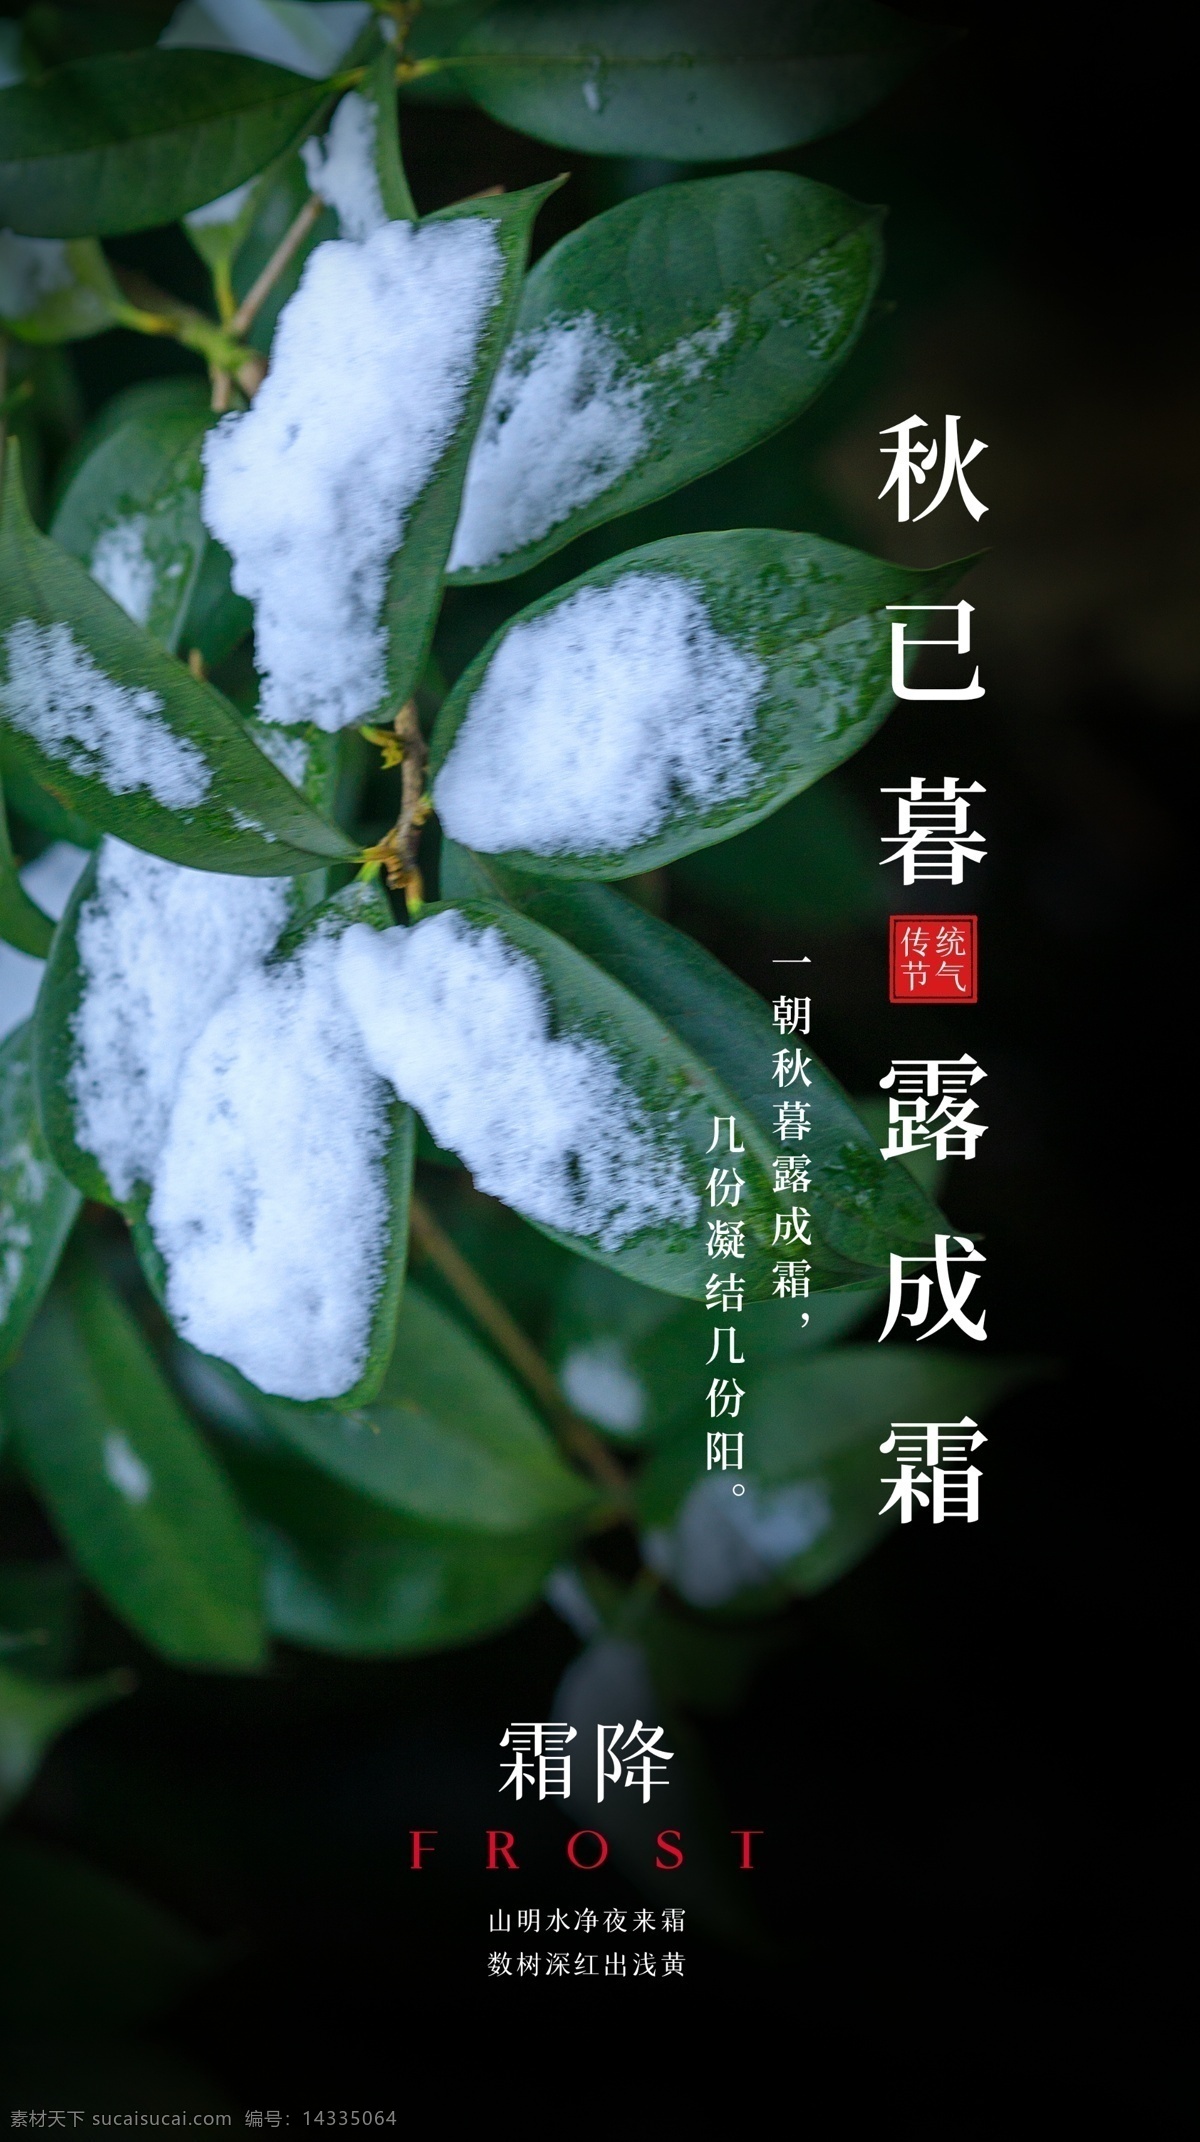 霜降 节气 传统 活动 海报 素材图片 传统节日